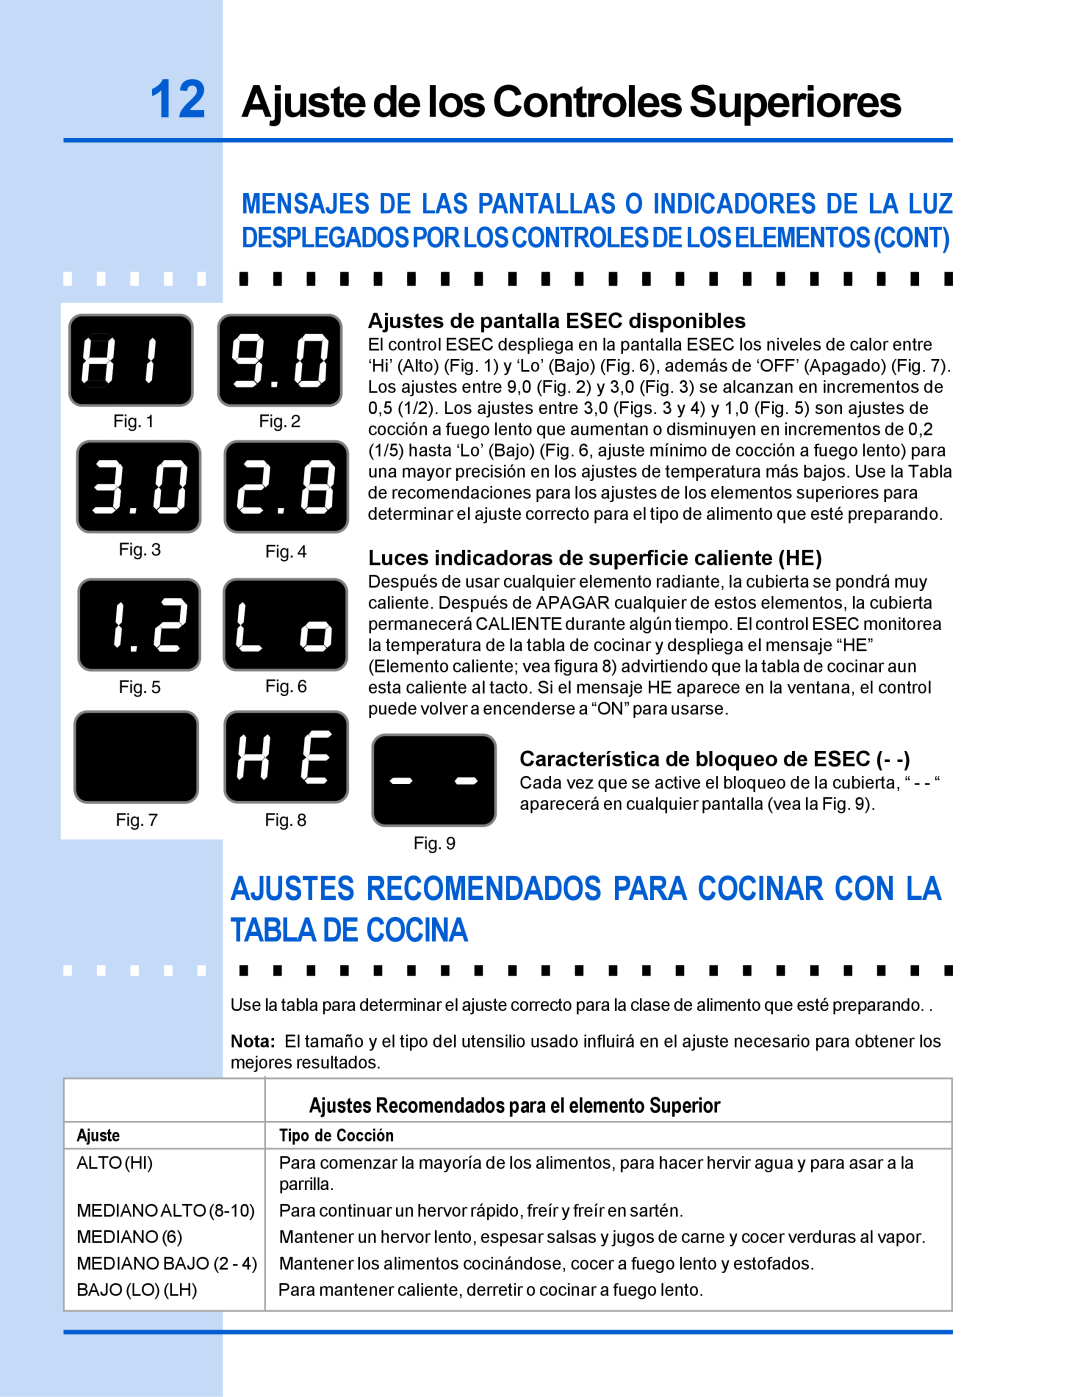 Electrolux 318 200 635 manual Ajuste de los Controles Superiores, Ajustes Recomendados Para Cocinar Con La Tabla De Cocina 